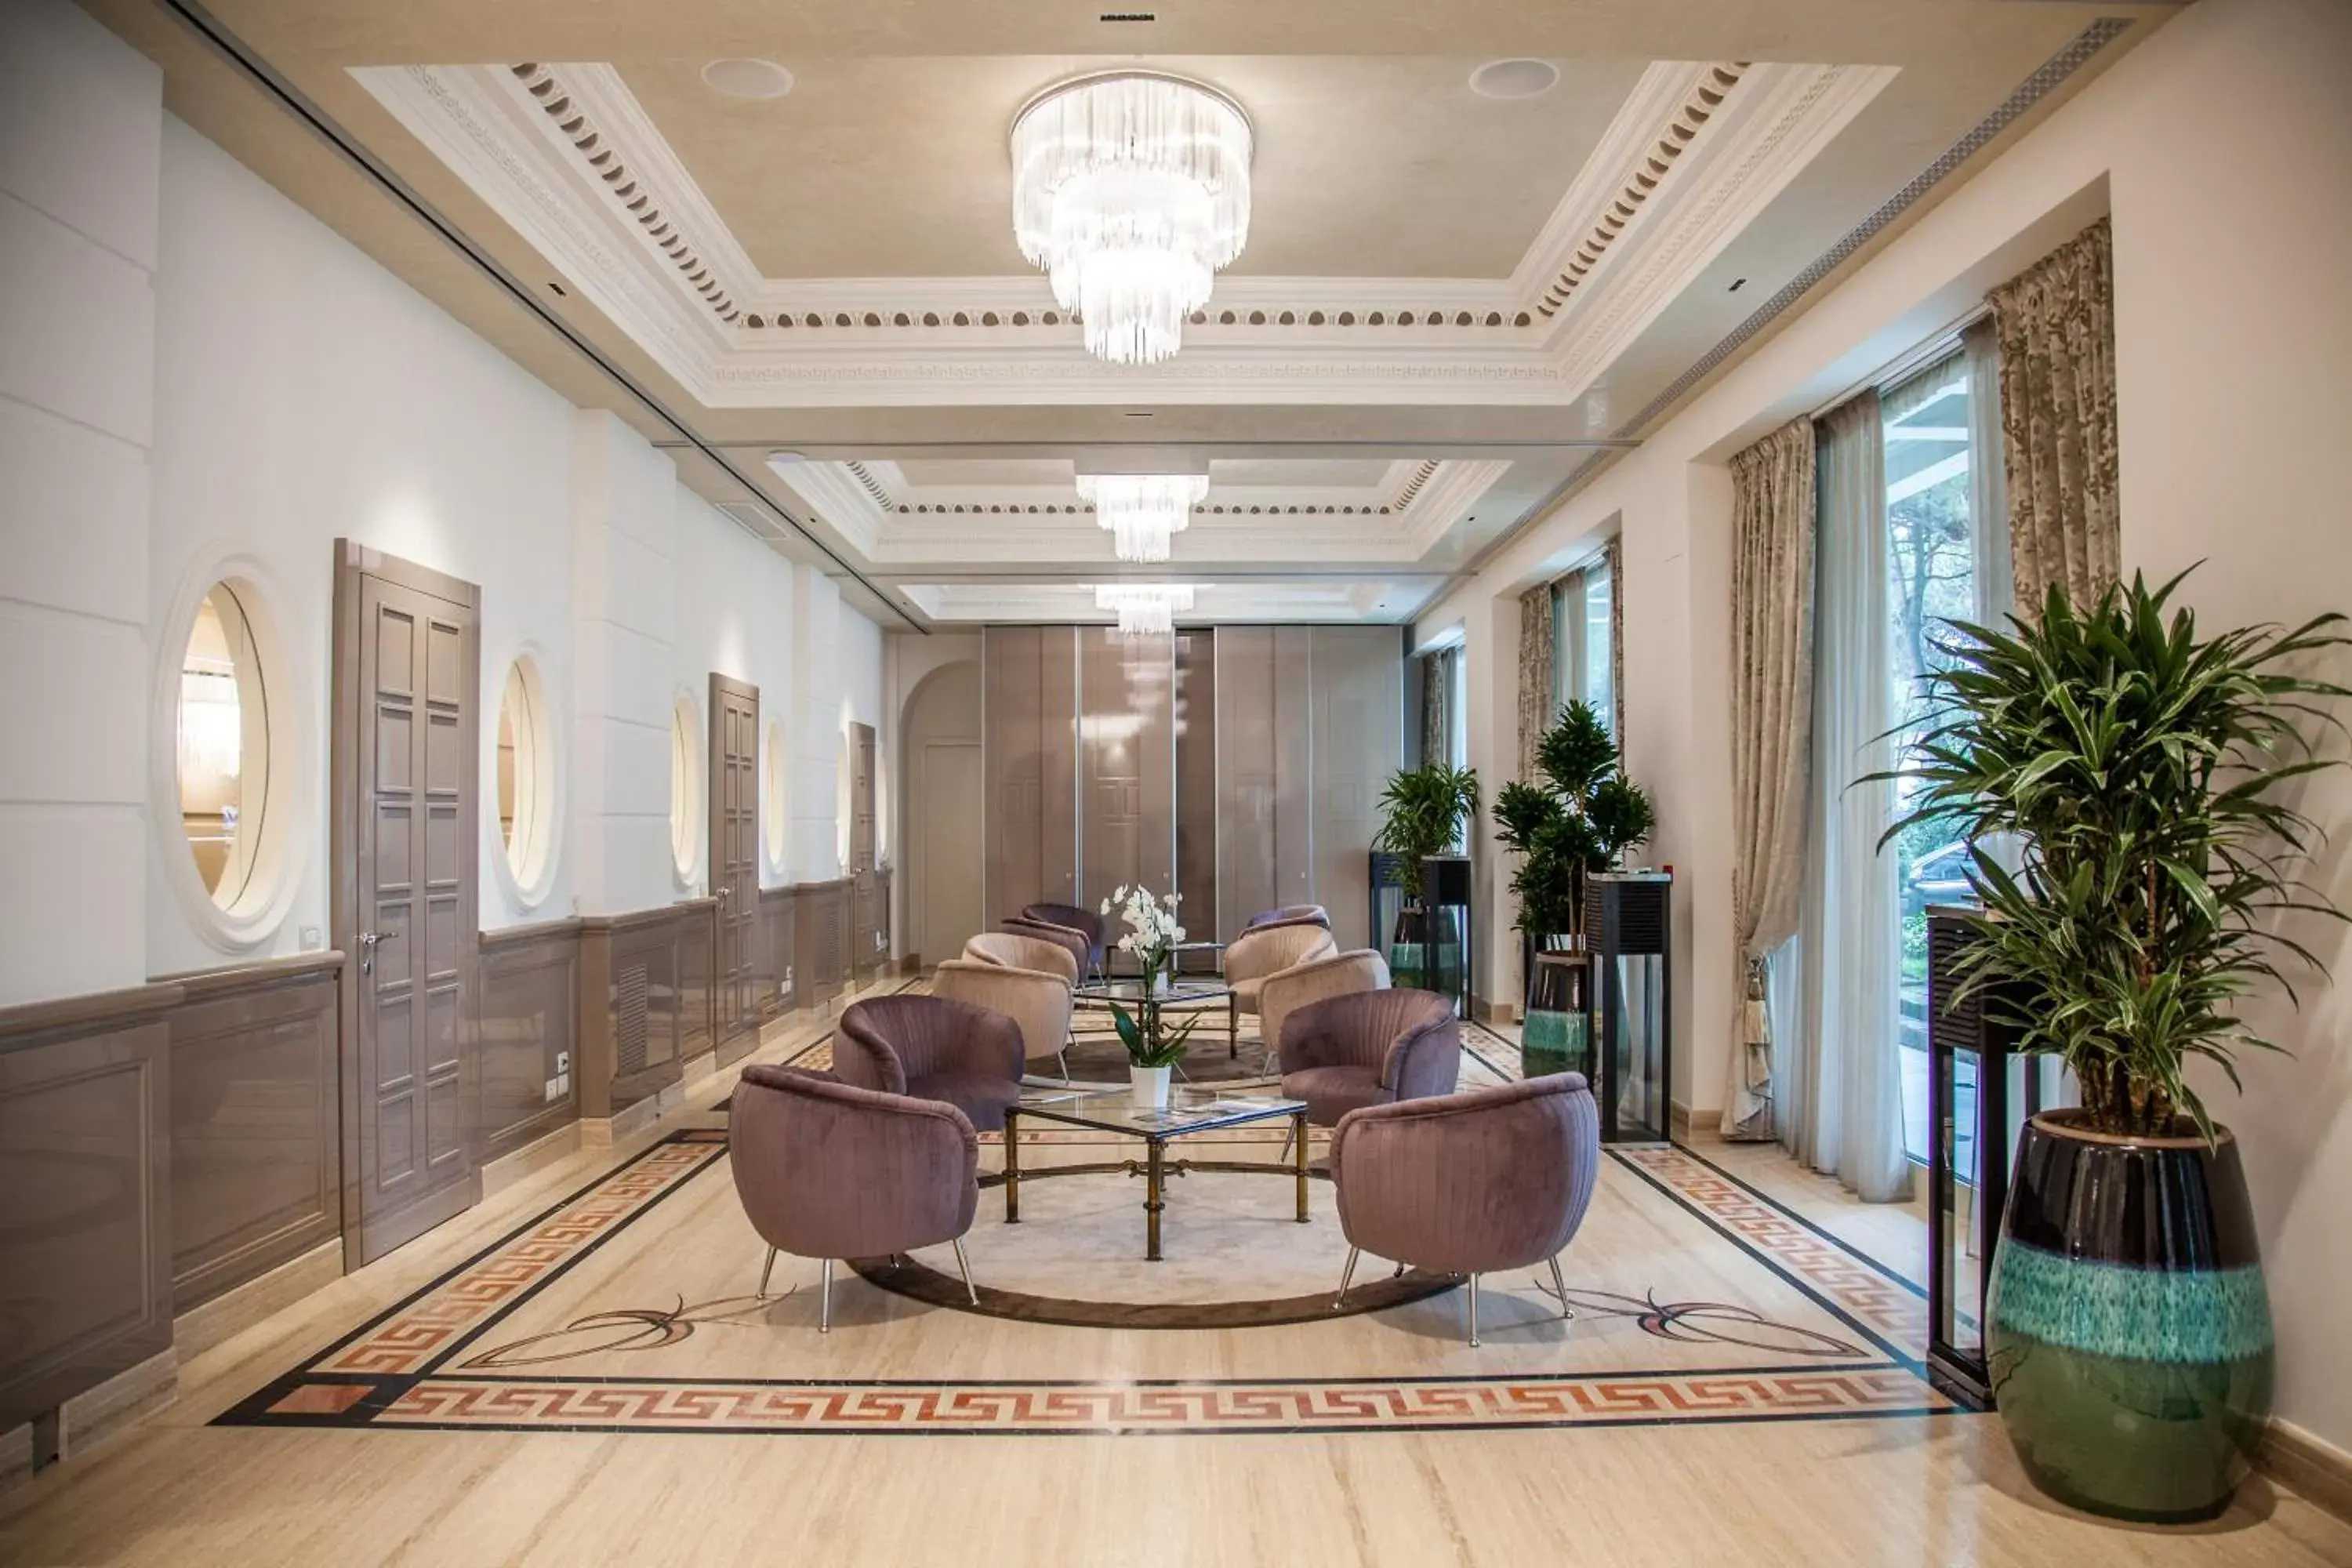 Lobby or reception in Hotel Aurelia